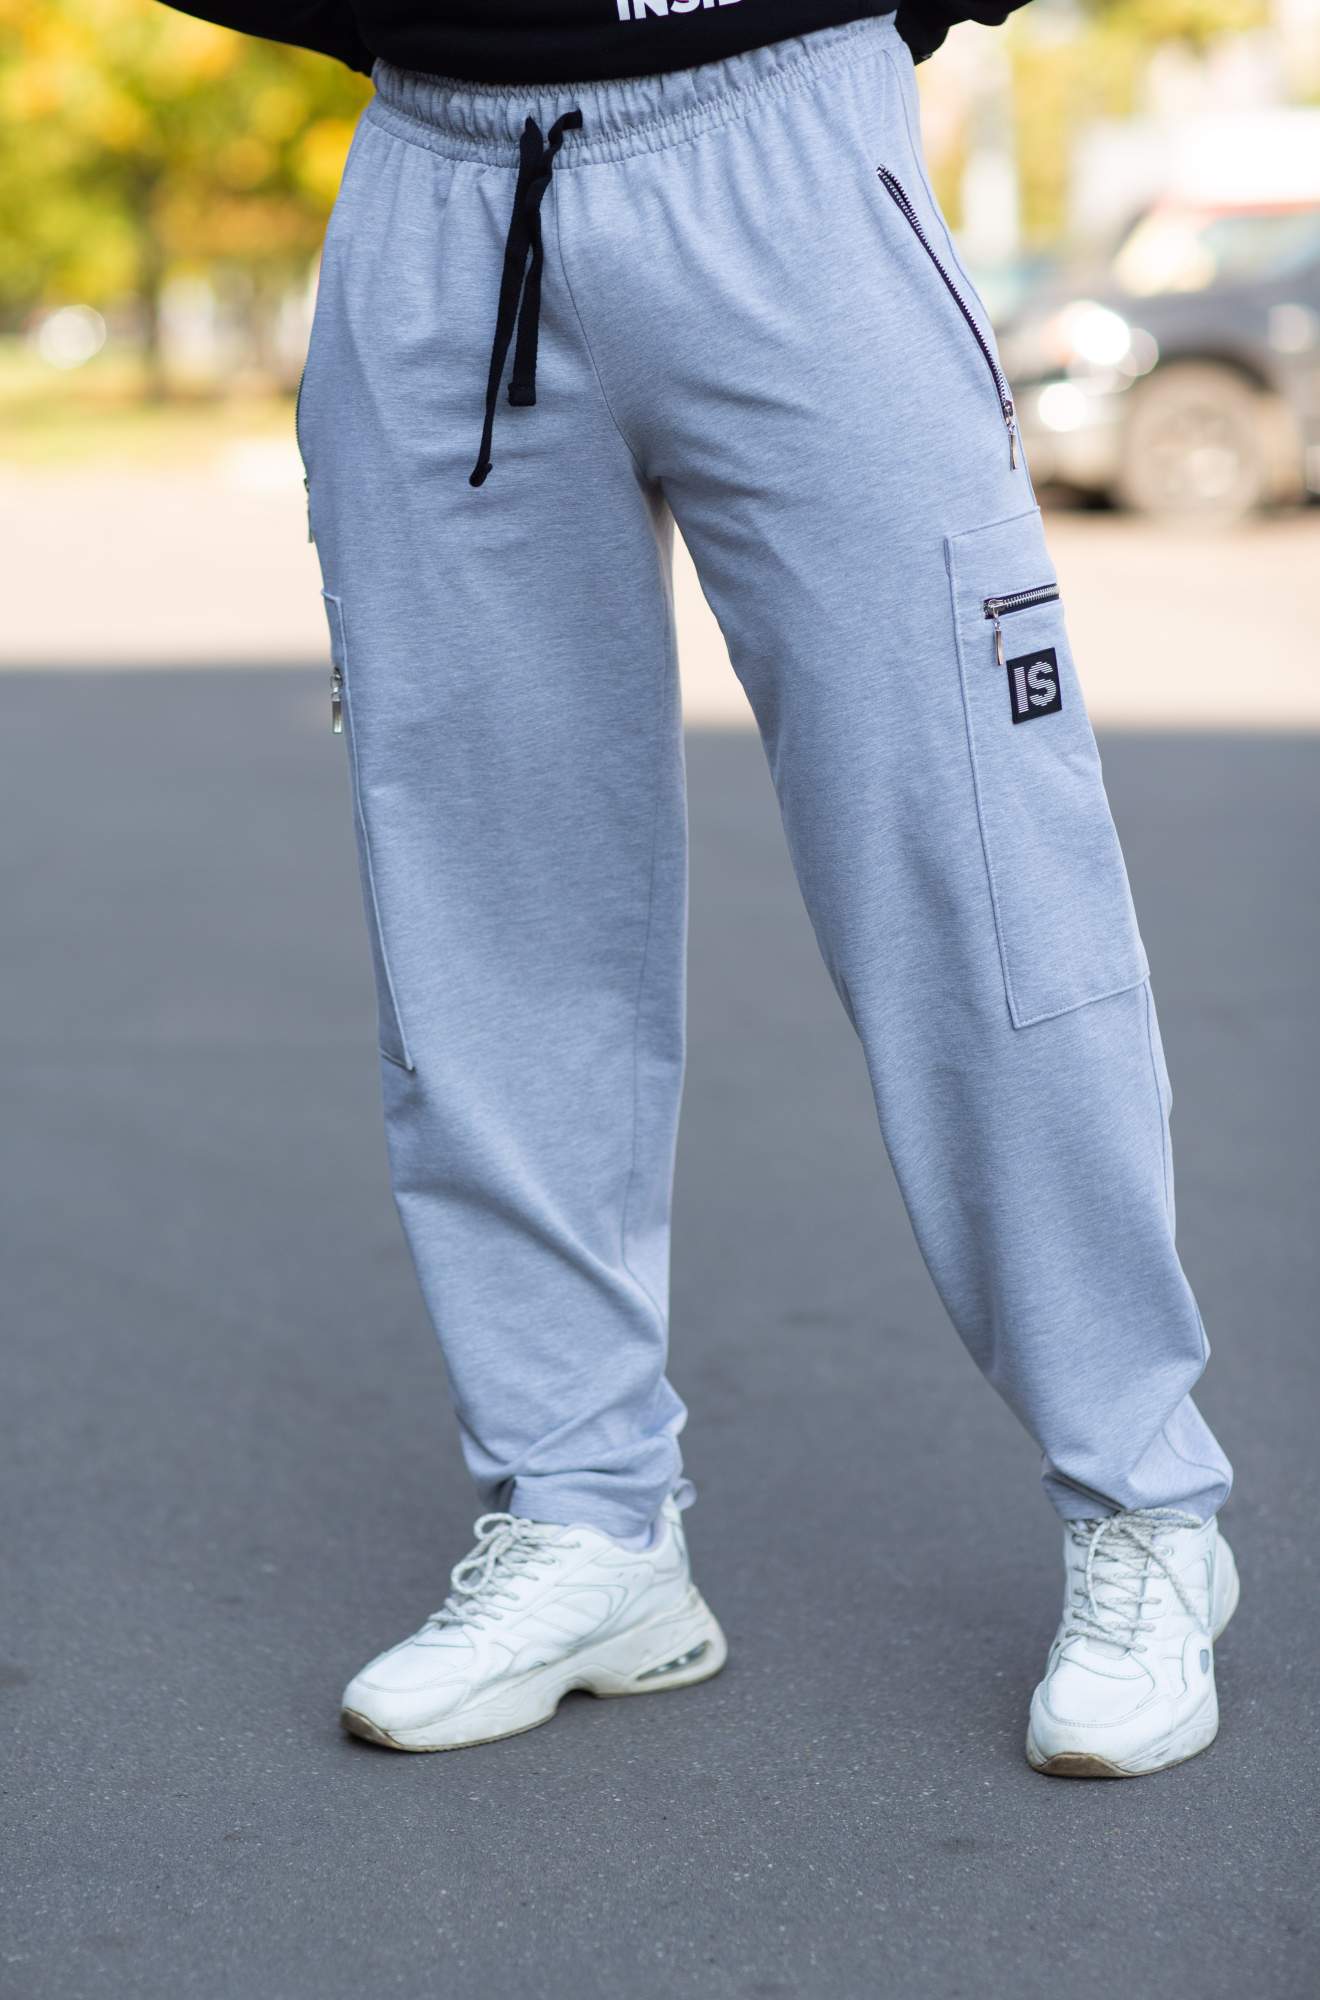 Спортивные брюки мужские INFERNO style Б-008-000 серые S - купить в Москве, цены на Мегамаркет | 600015434484